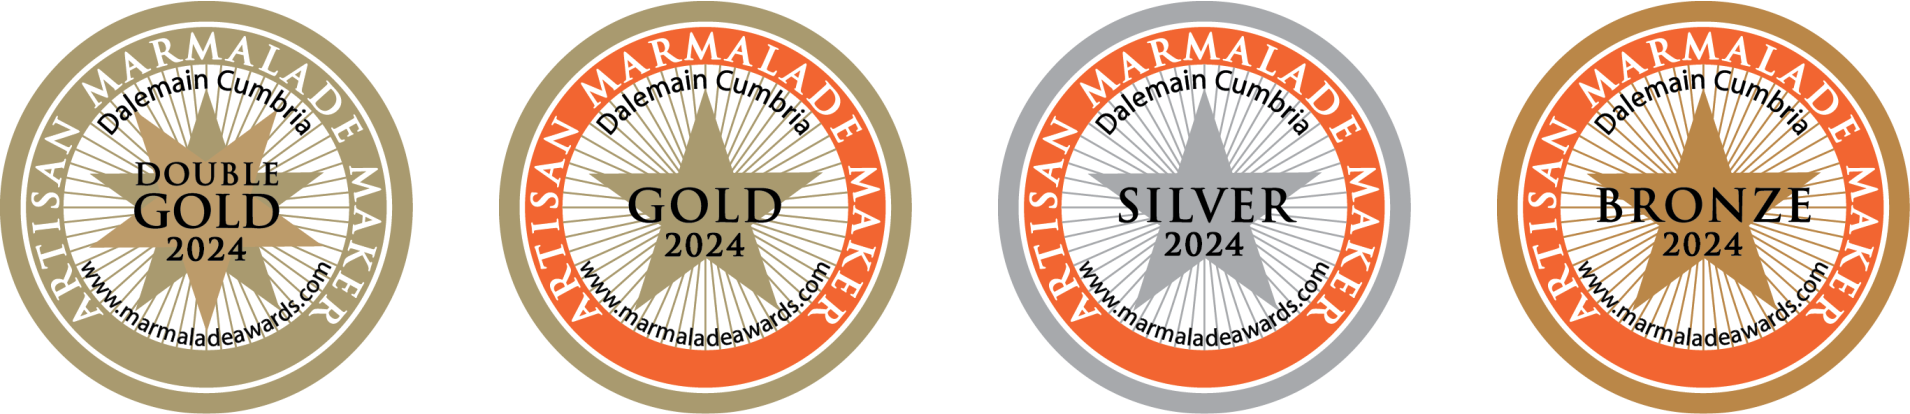 Marmalade Award Labels 2024